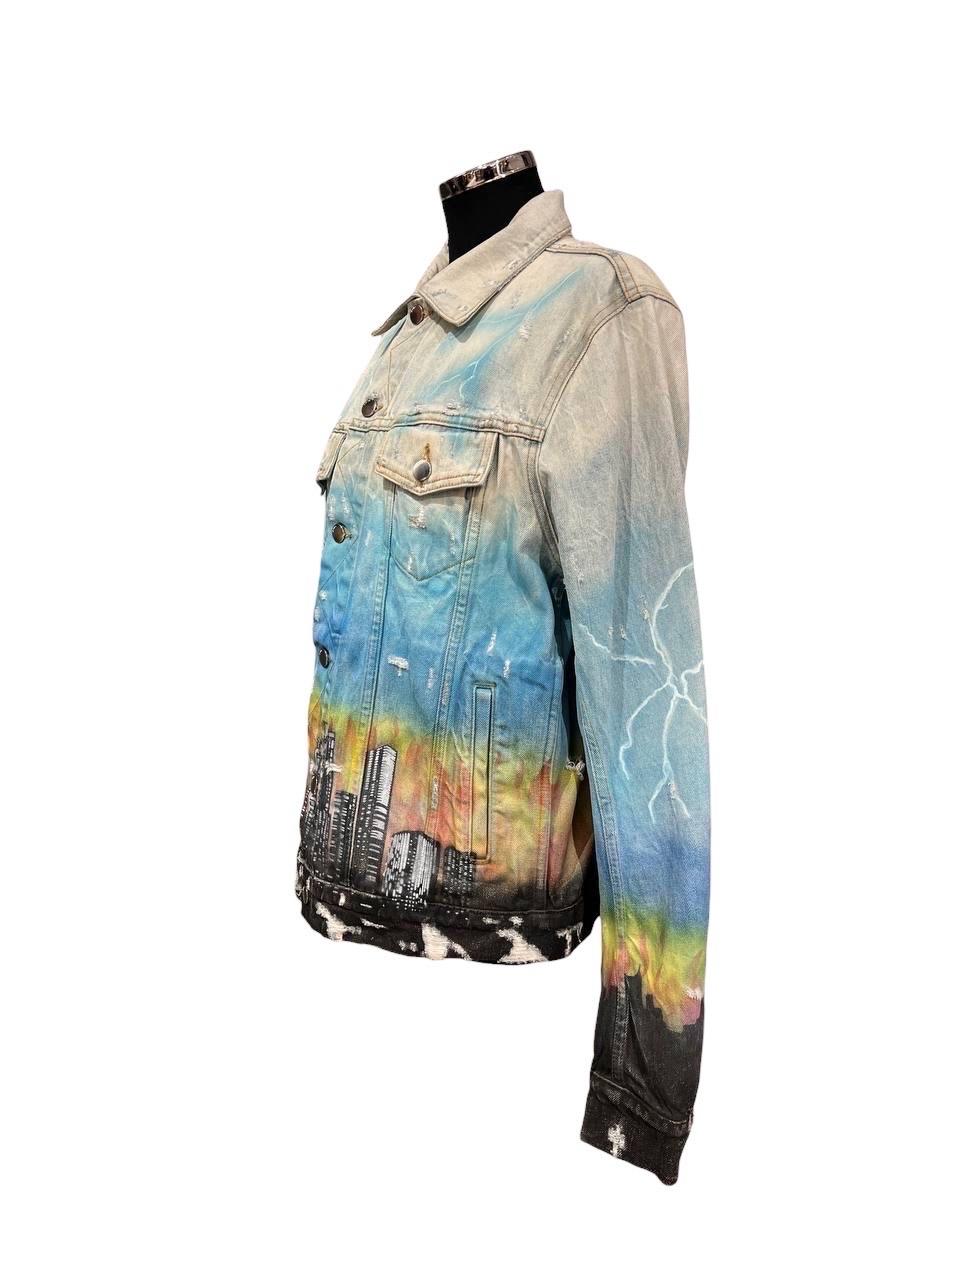 Manteau fabriqué par Amiri, réalisé en jean clair avec imprimé coloré, doté d'une doublure aux boutons et de deux poches latérales. La partie frontale, à hauteur de poitrine, présente deux tasses avec des boutons de fermeture. Taglia 52.

L'article